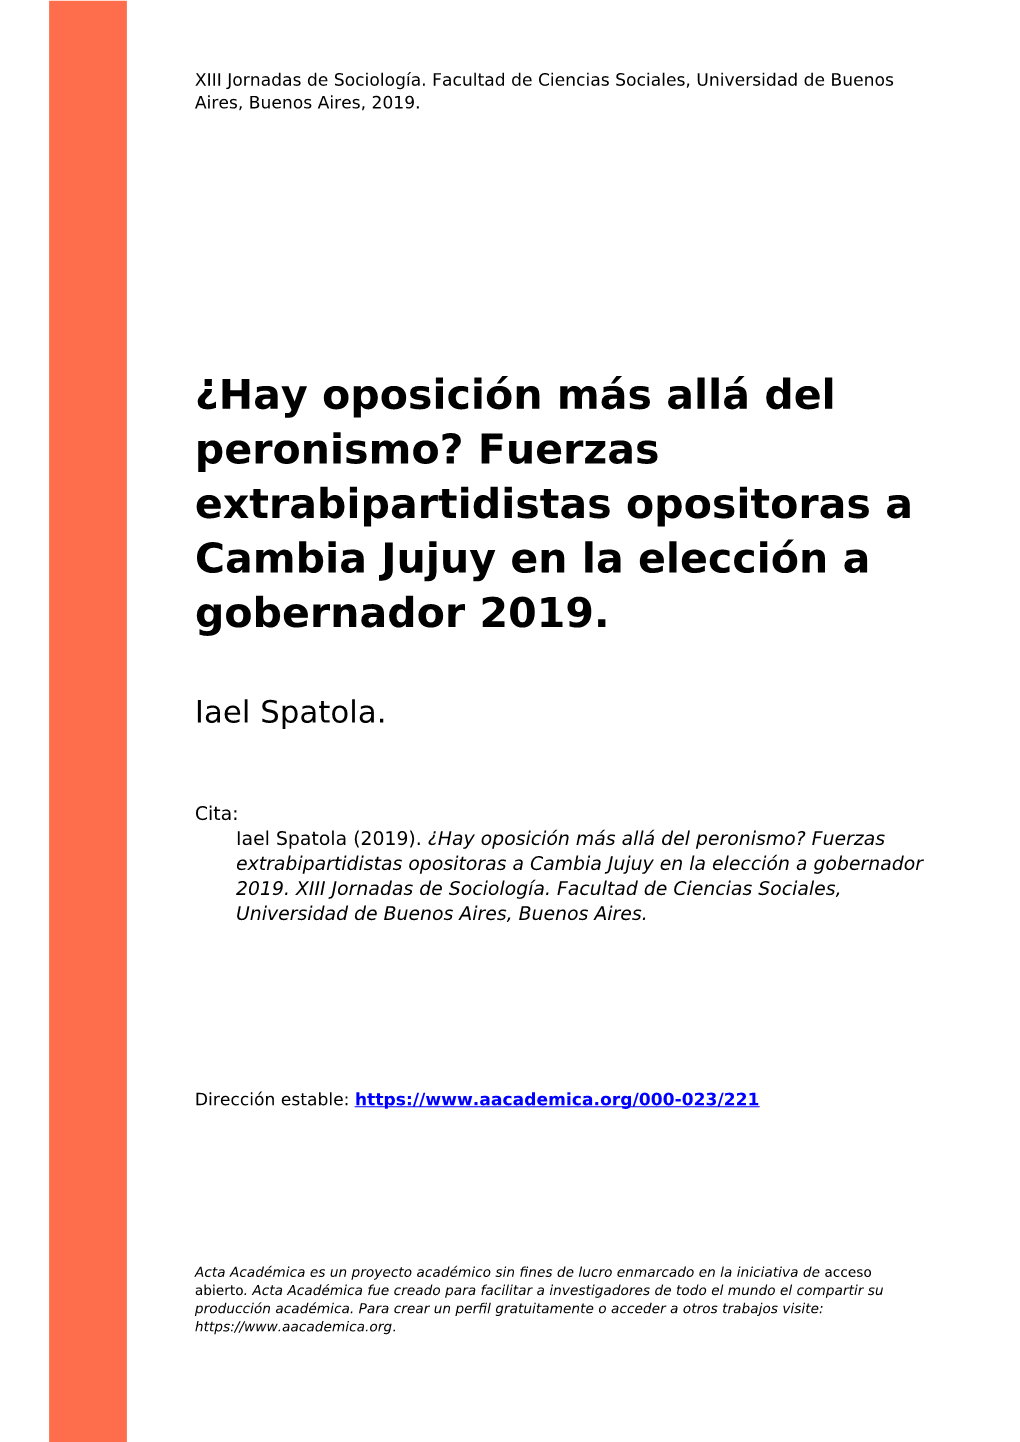 Fuerzas Extrabipartidistas Opositoras a Cambia Jujuy En La Elección a Gobernador 2019